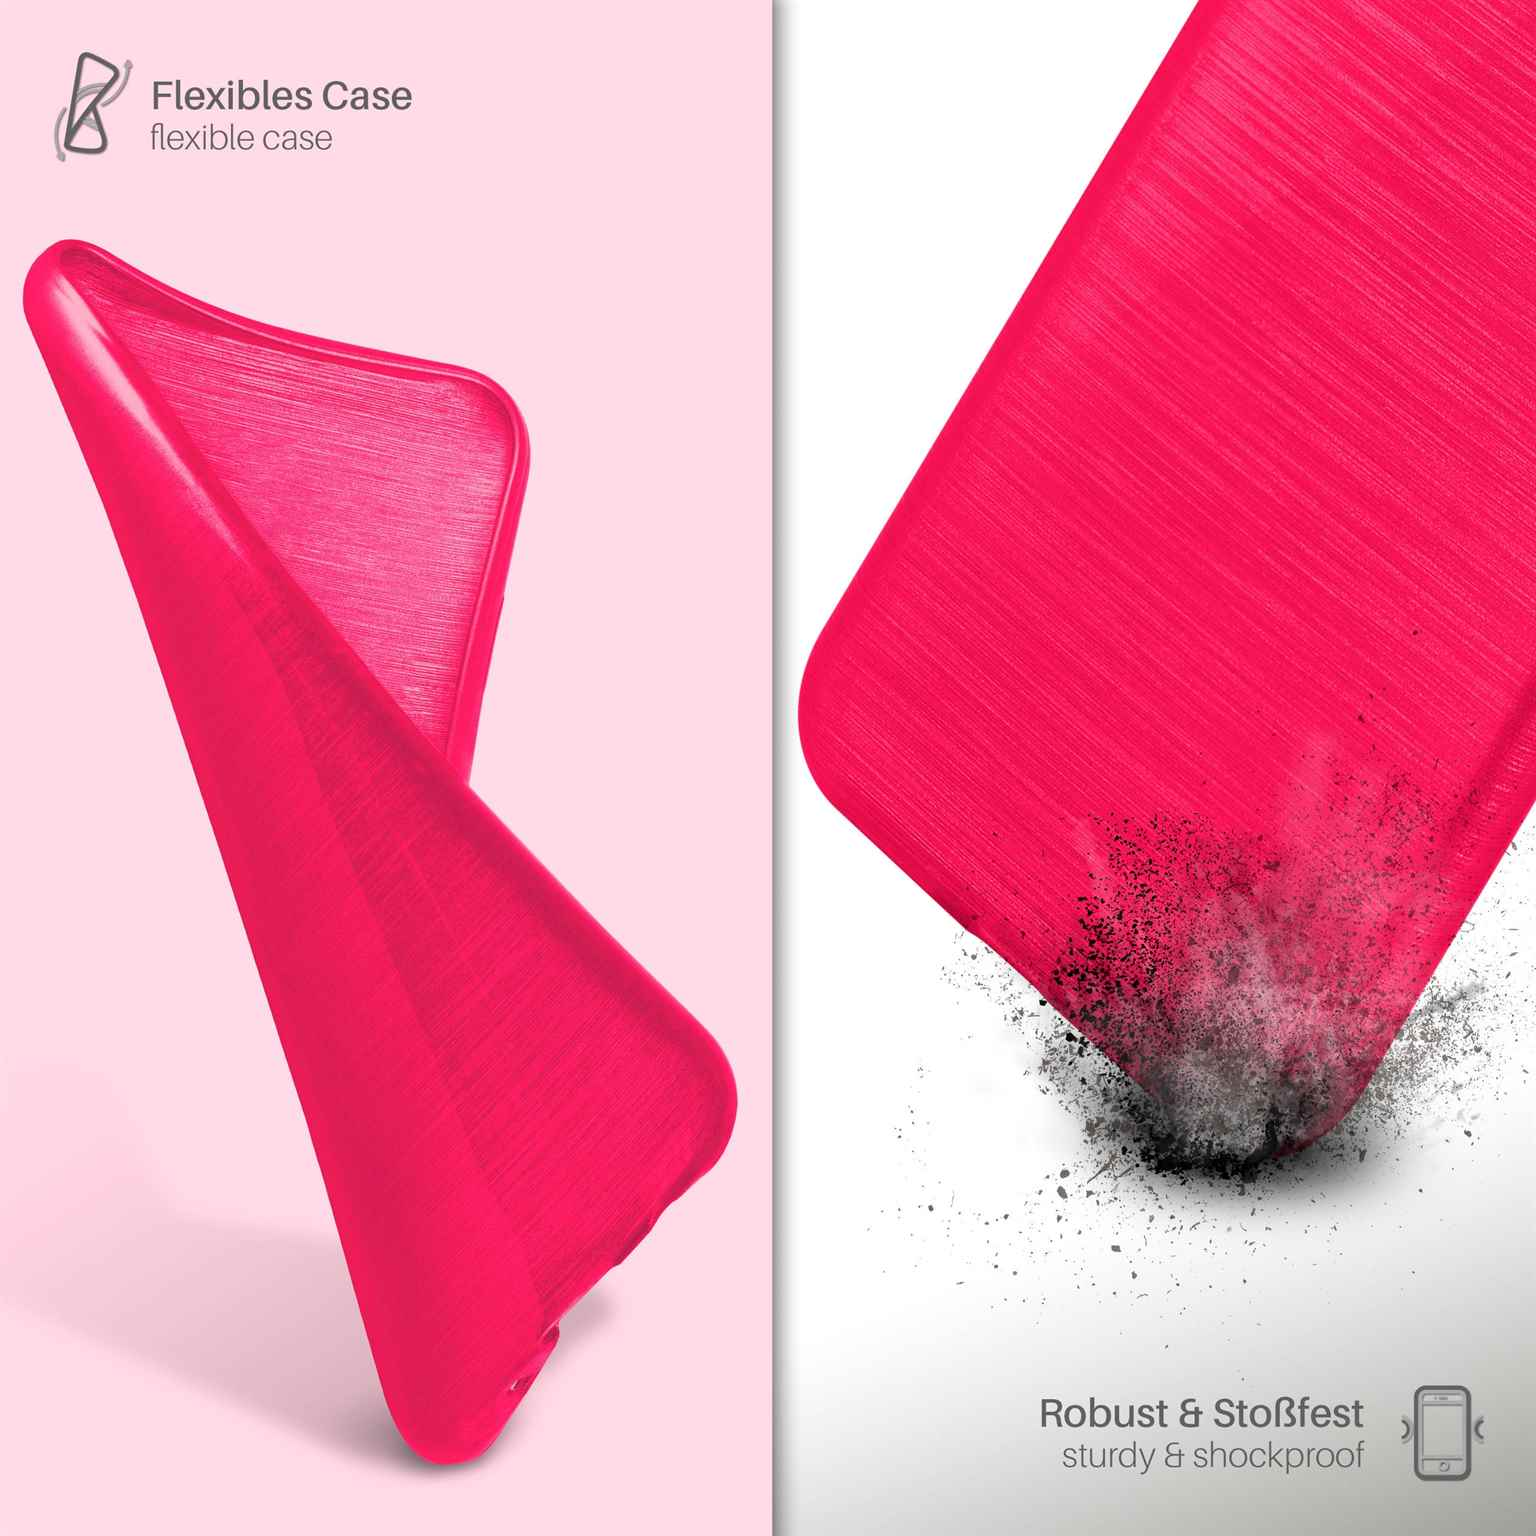 MOEX Brushed Case, Magenta-Pink Backcover, L70, LG